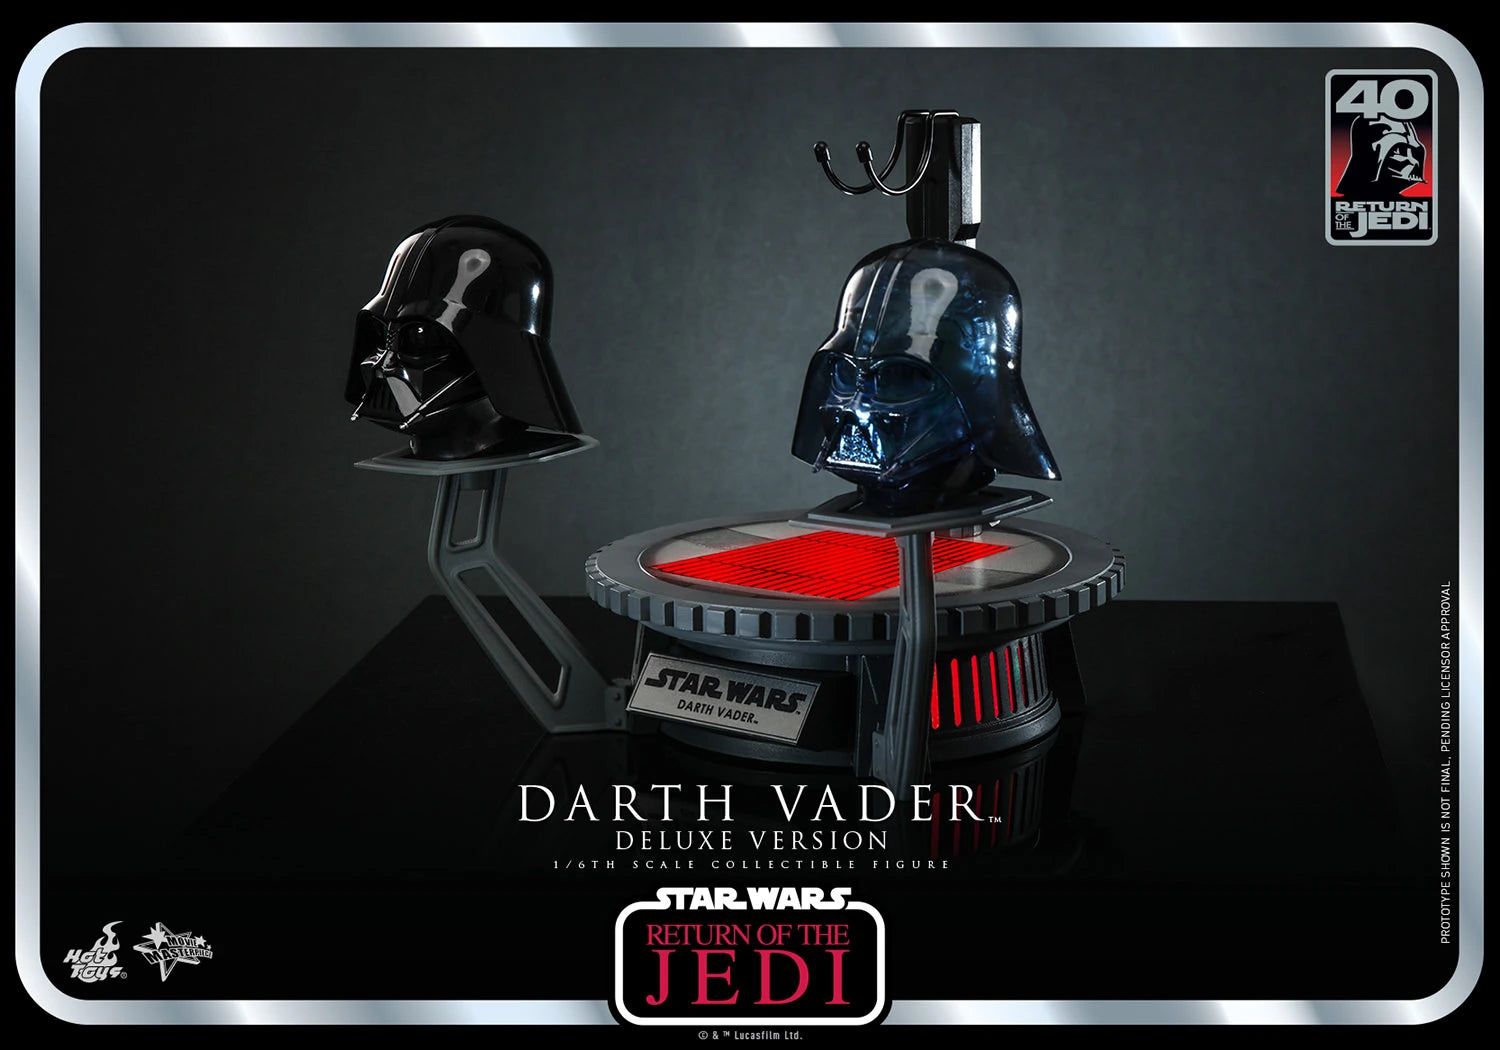 Hot Toys Star Wars: Return Of The Jedi 40 Aniversario - Darth Vader Deluxe Escala 1/6